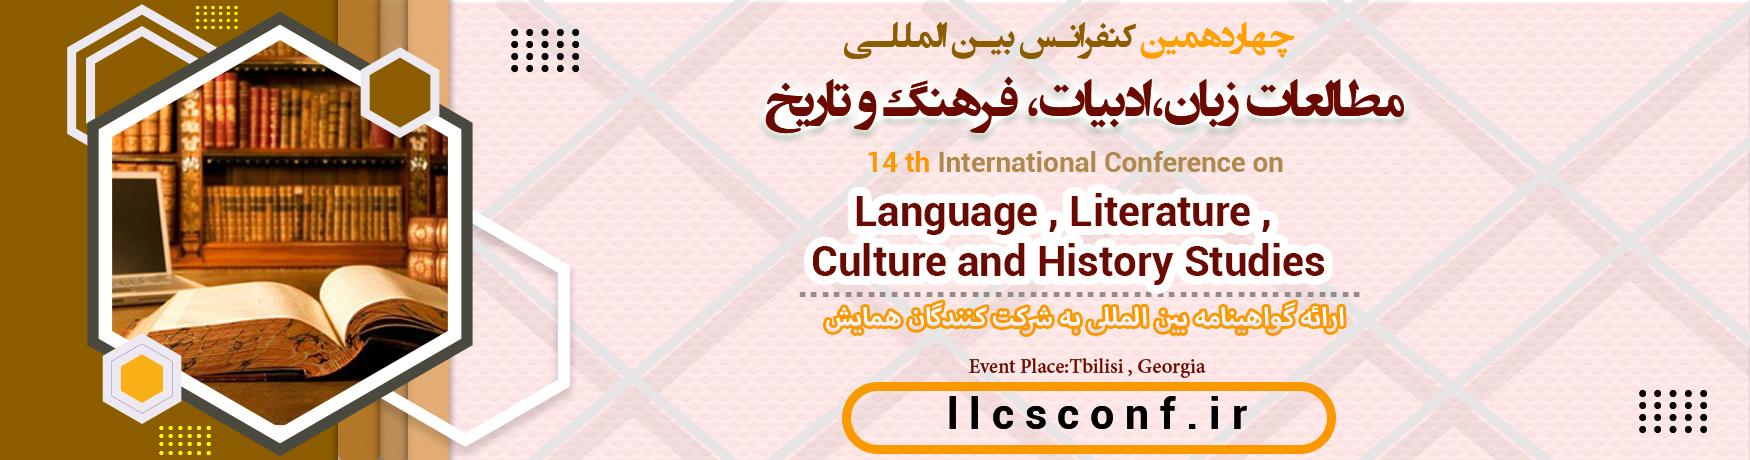 کنفرانس بین المللی مطالعات زبان،ادبیات، فرهنگ و تاریخ	